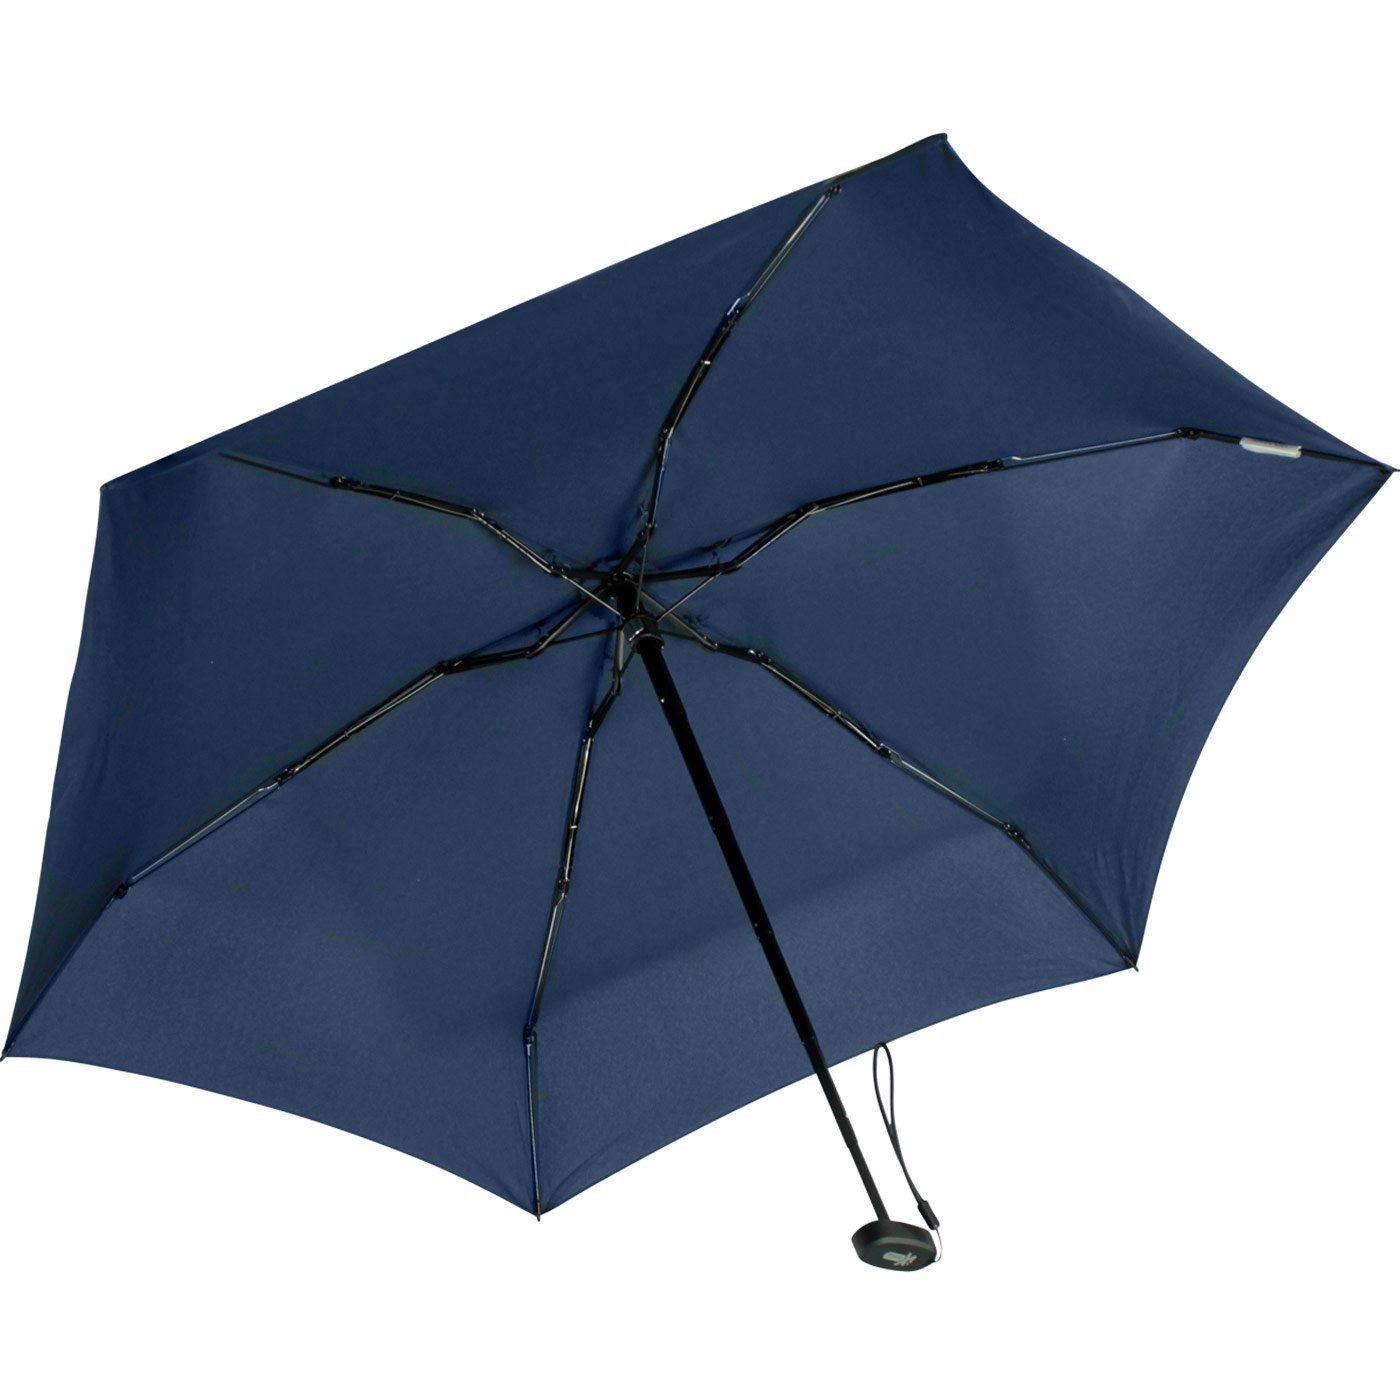 Schirm im Ultra blue dunkelblau cm Format, Taschenregenschirm winziger ultra-klein, Handy Mini mit - Softcase-Etui 15 iX-brella insignia